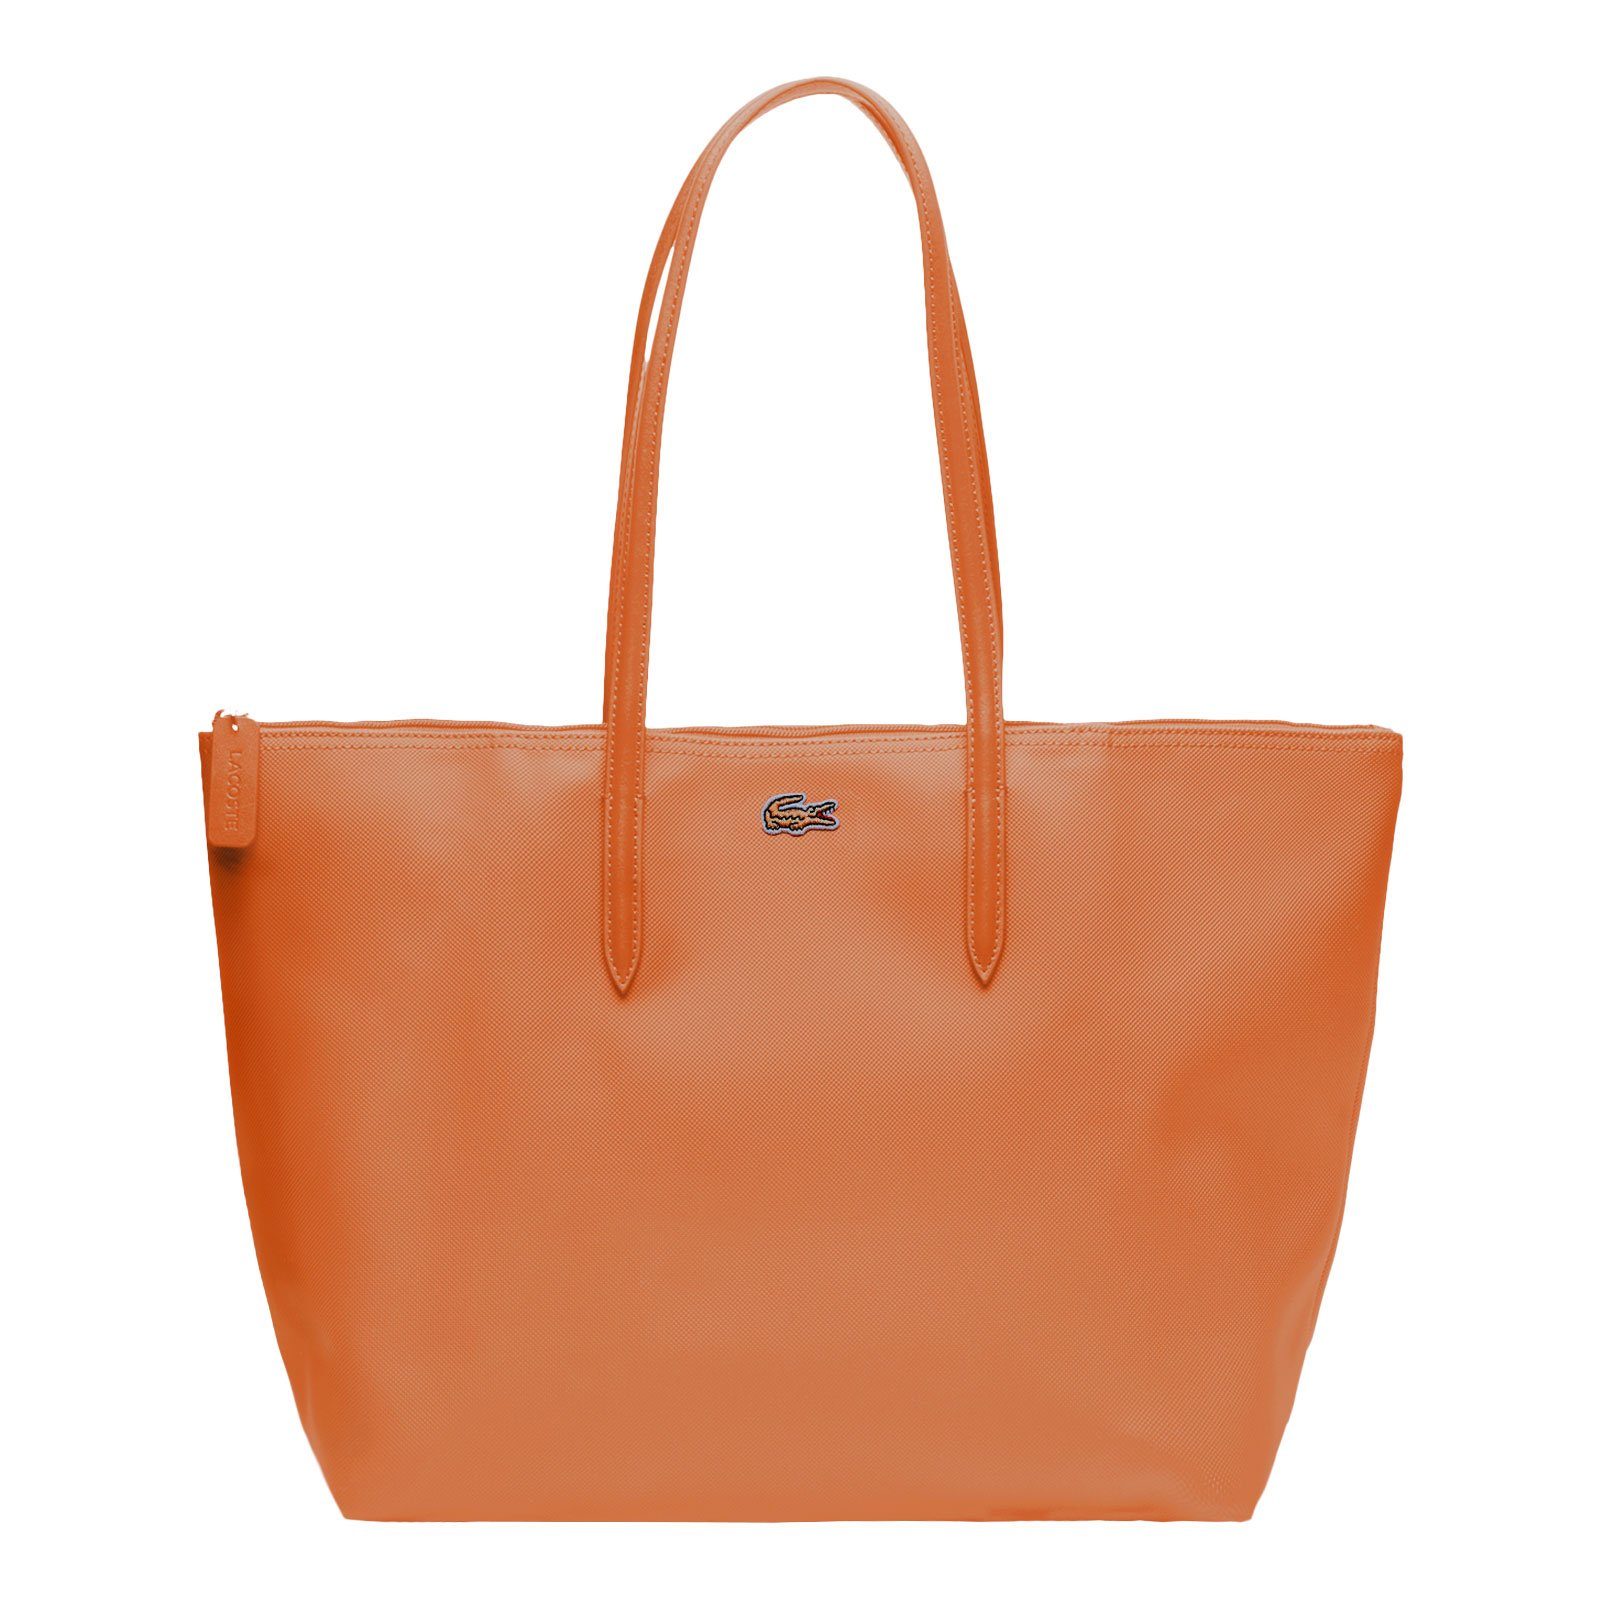 Handtasche J09 Shopping mandarinier Bag, Lacoste mit kultigem Damen Krokodillogo